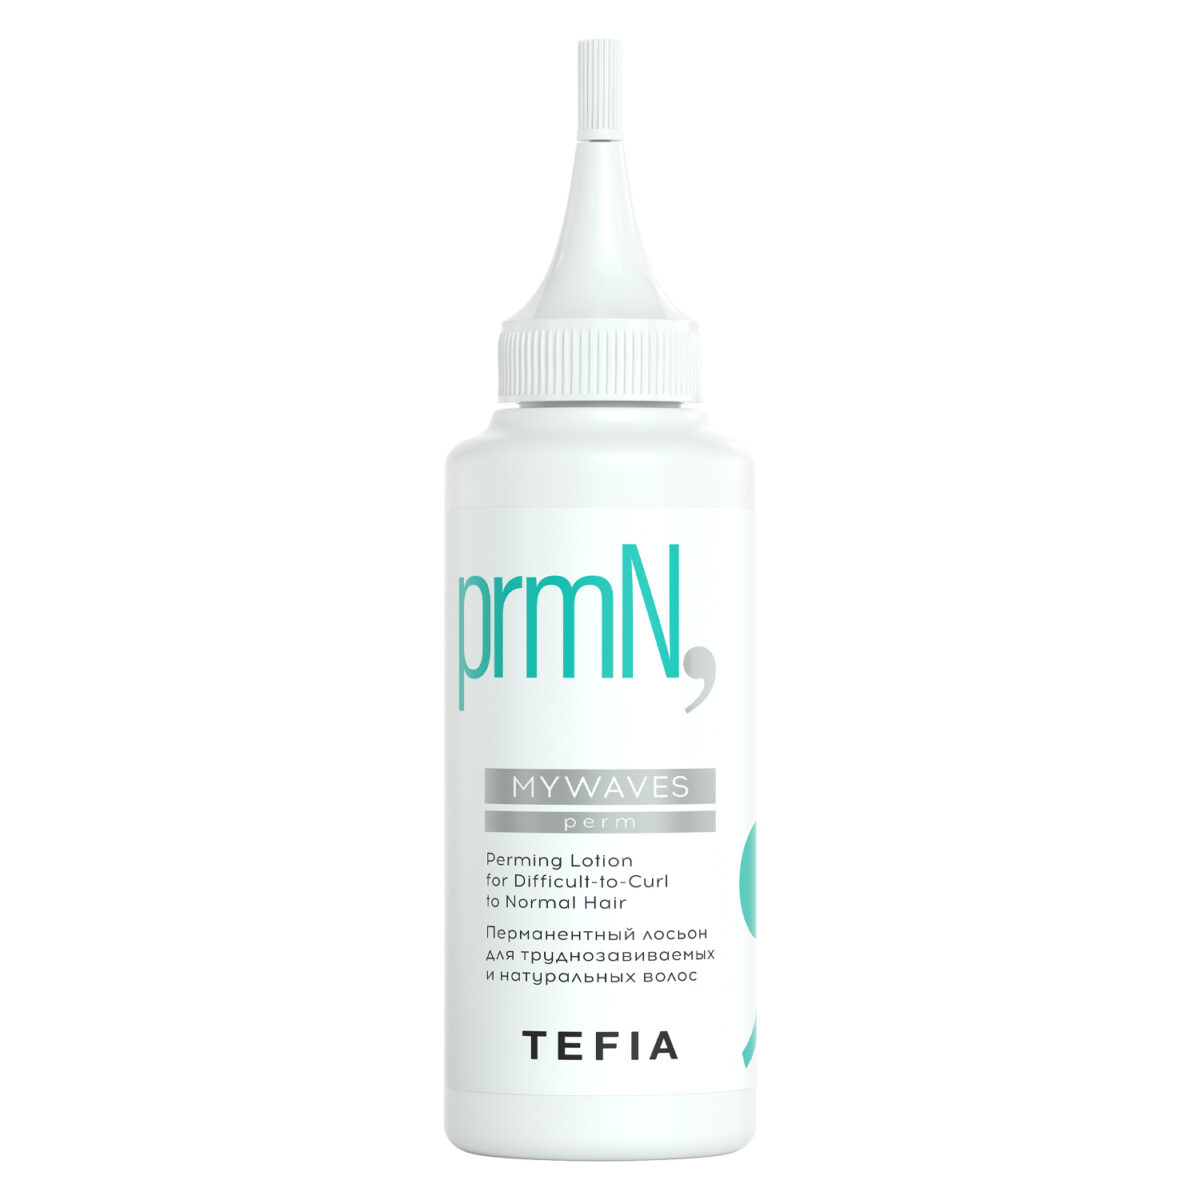 tefMWN61920, Tefia MYWAVES Перманентный лосьон для труднозавиваемых и натуральных волос 120 мл, TEFIA